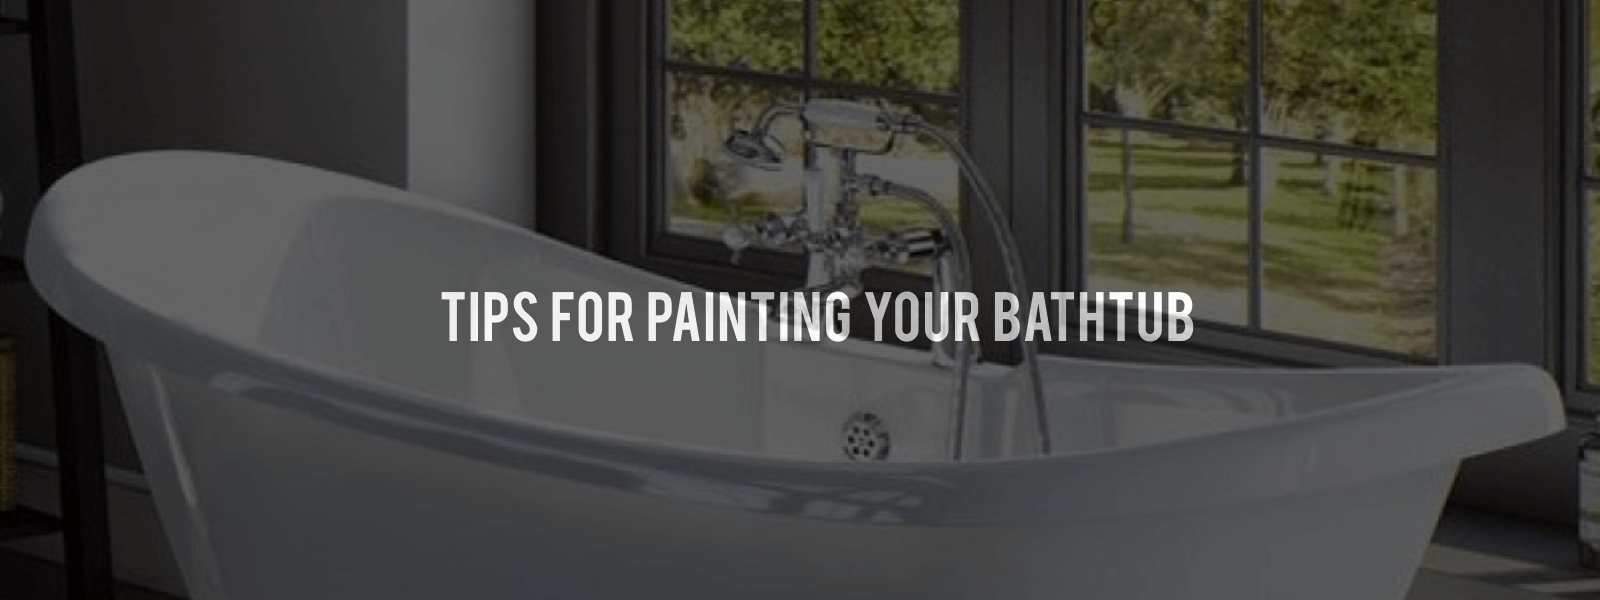 5 Tips For Painting Your Bathtub Baths, How To Paint An Acrylic Bathtub